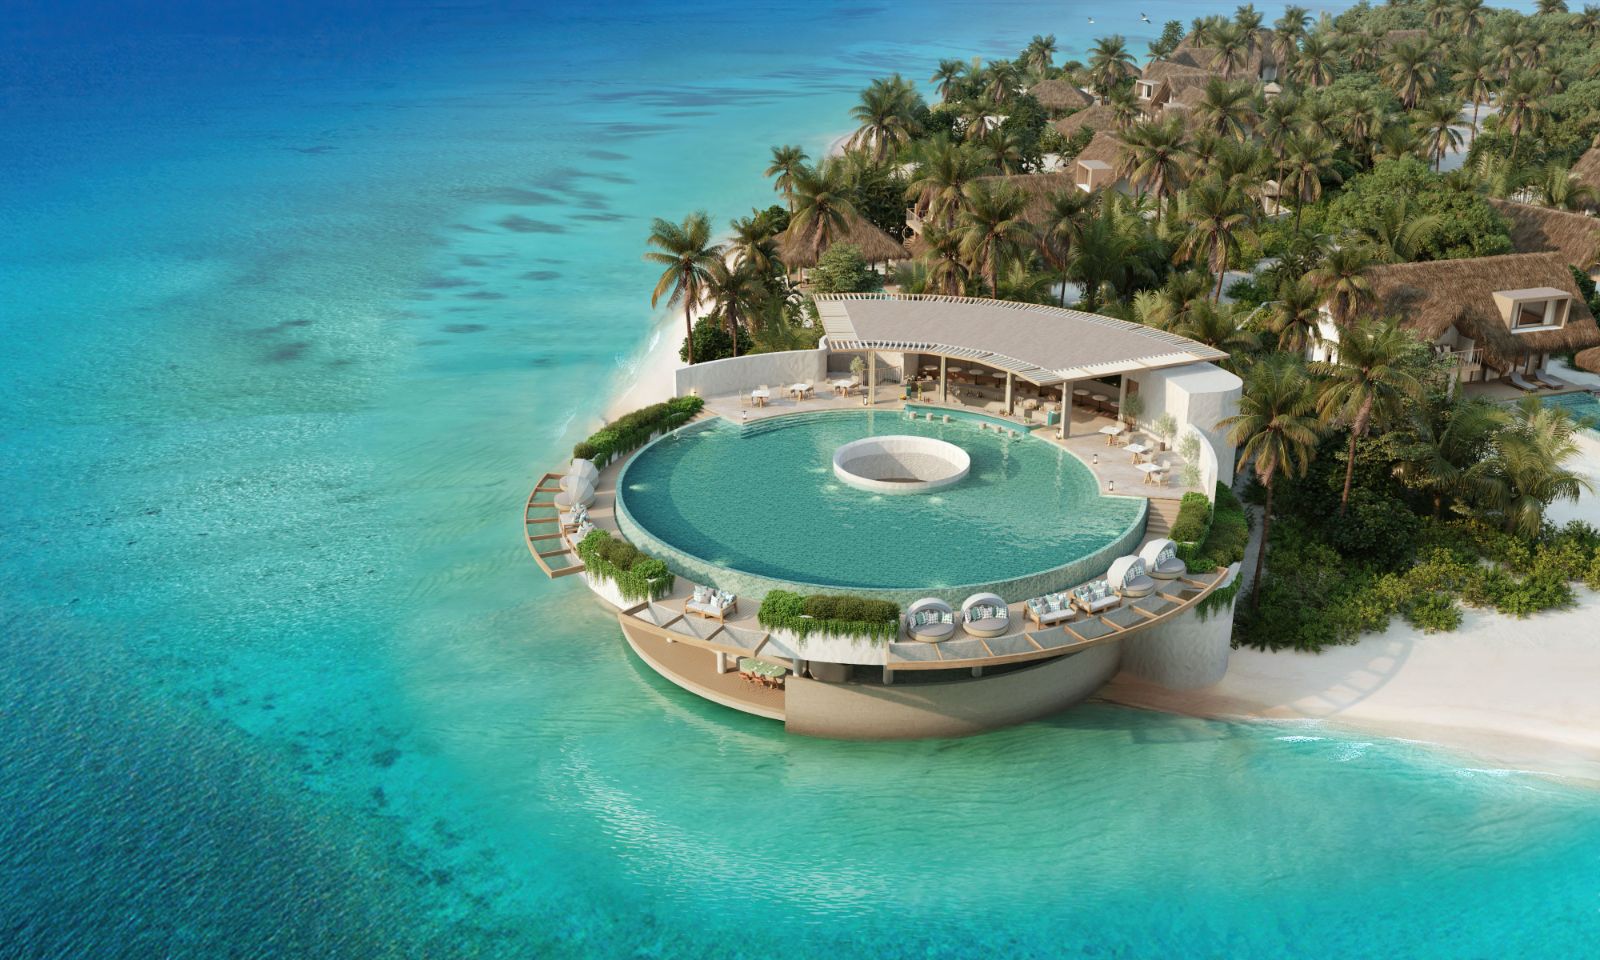 Aerial view of the circular infinity pool at Six Senses Kanuhura Maldives